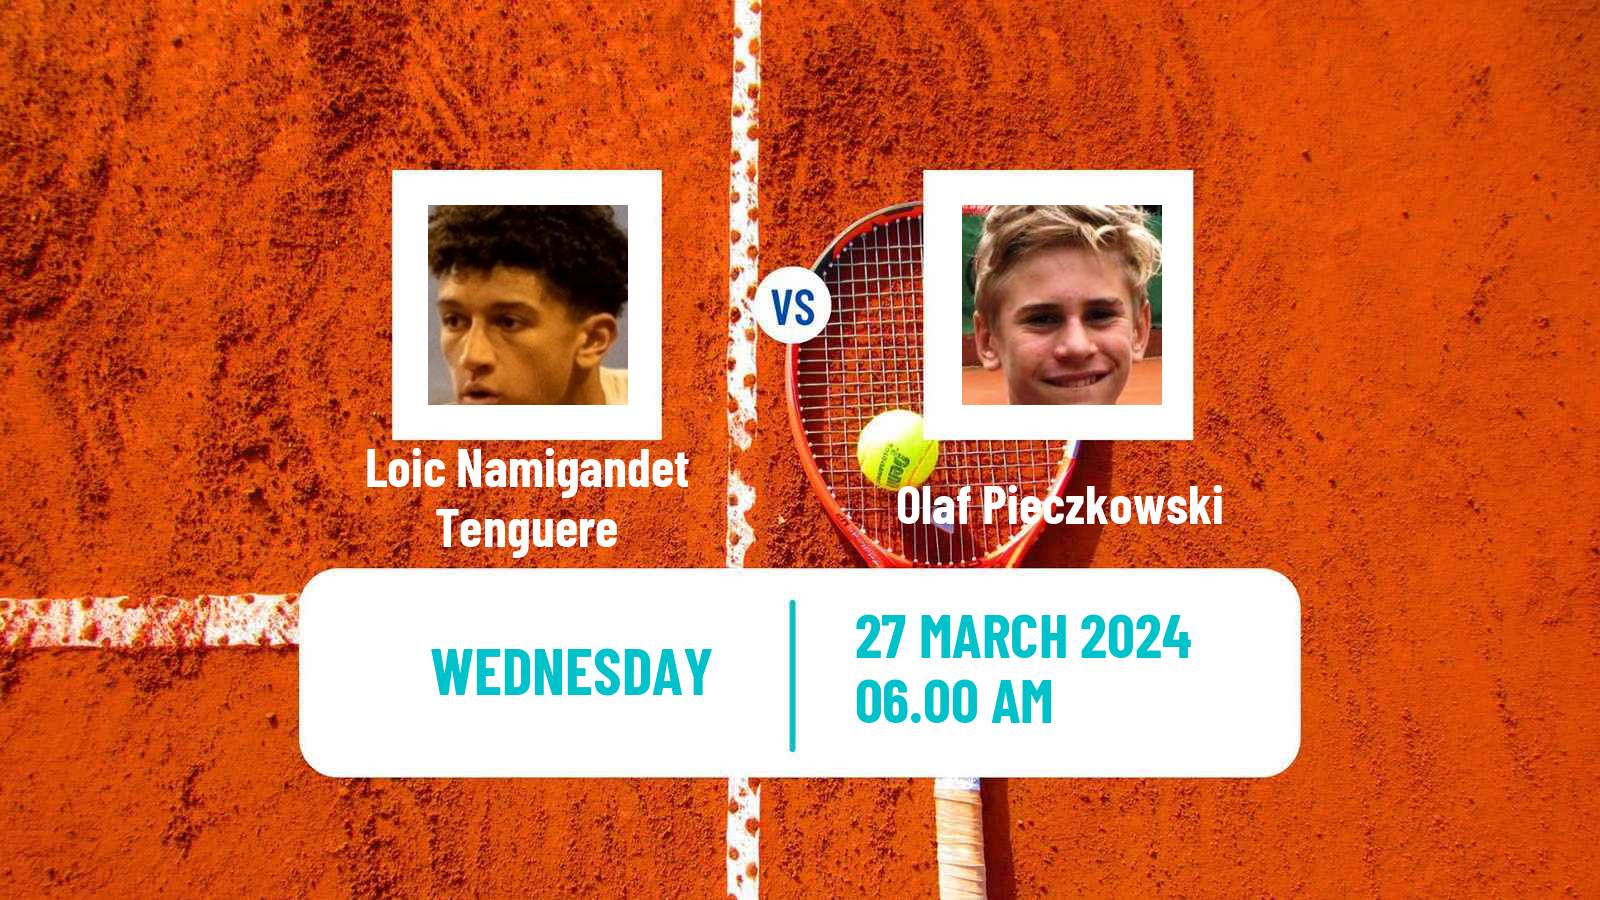 Tennis ITF M25 Trnava Men Loic Namigandet Tenguere - Olaf Pieczkowski